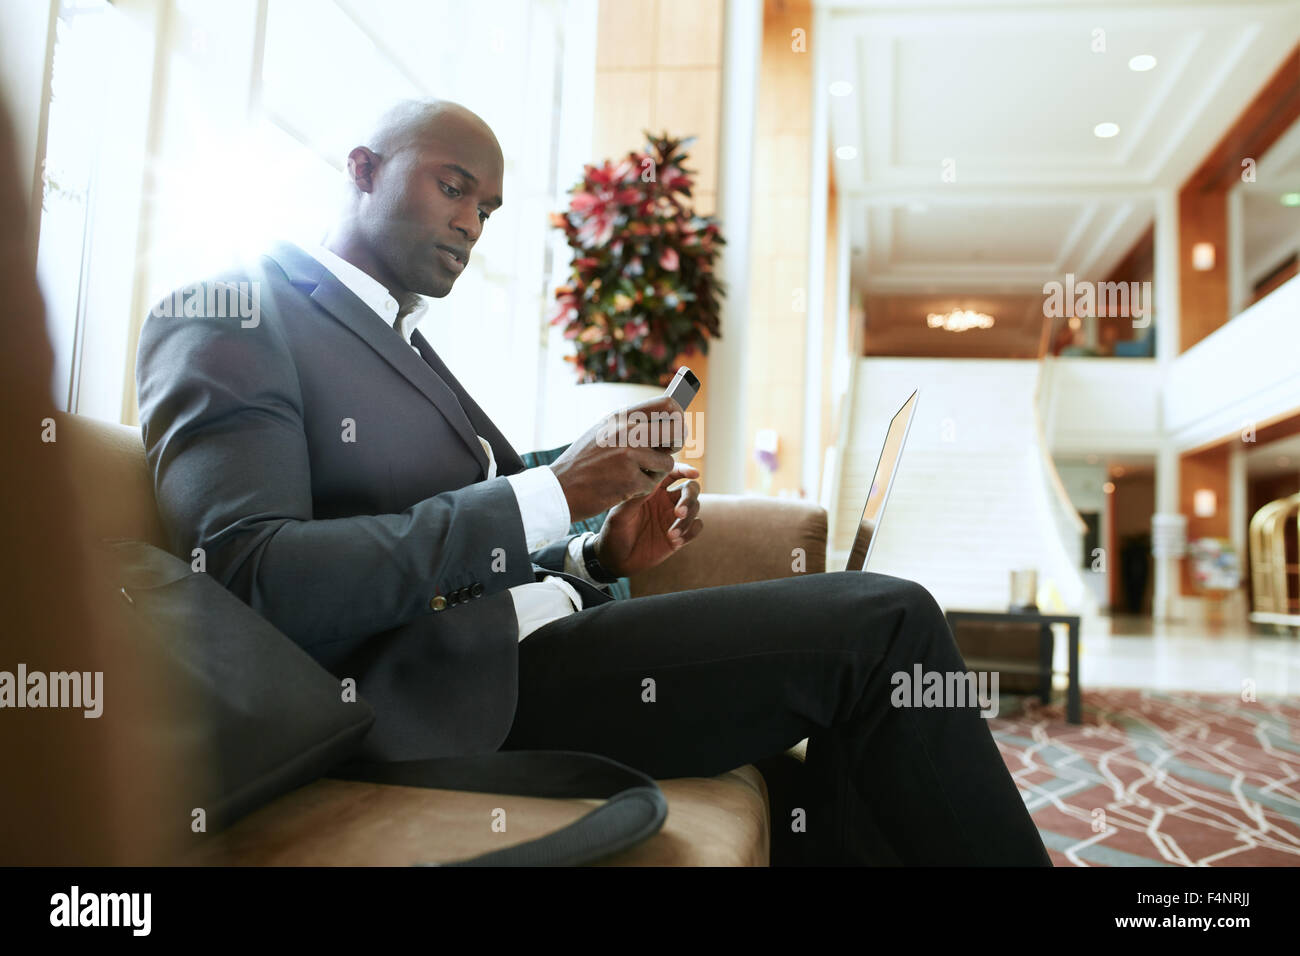 Male executive assis sur un canapé en regardant son téléphone mobile. African businessman en attente dans le hall de l'hôtel. Banque D'Images